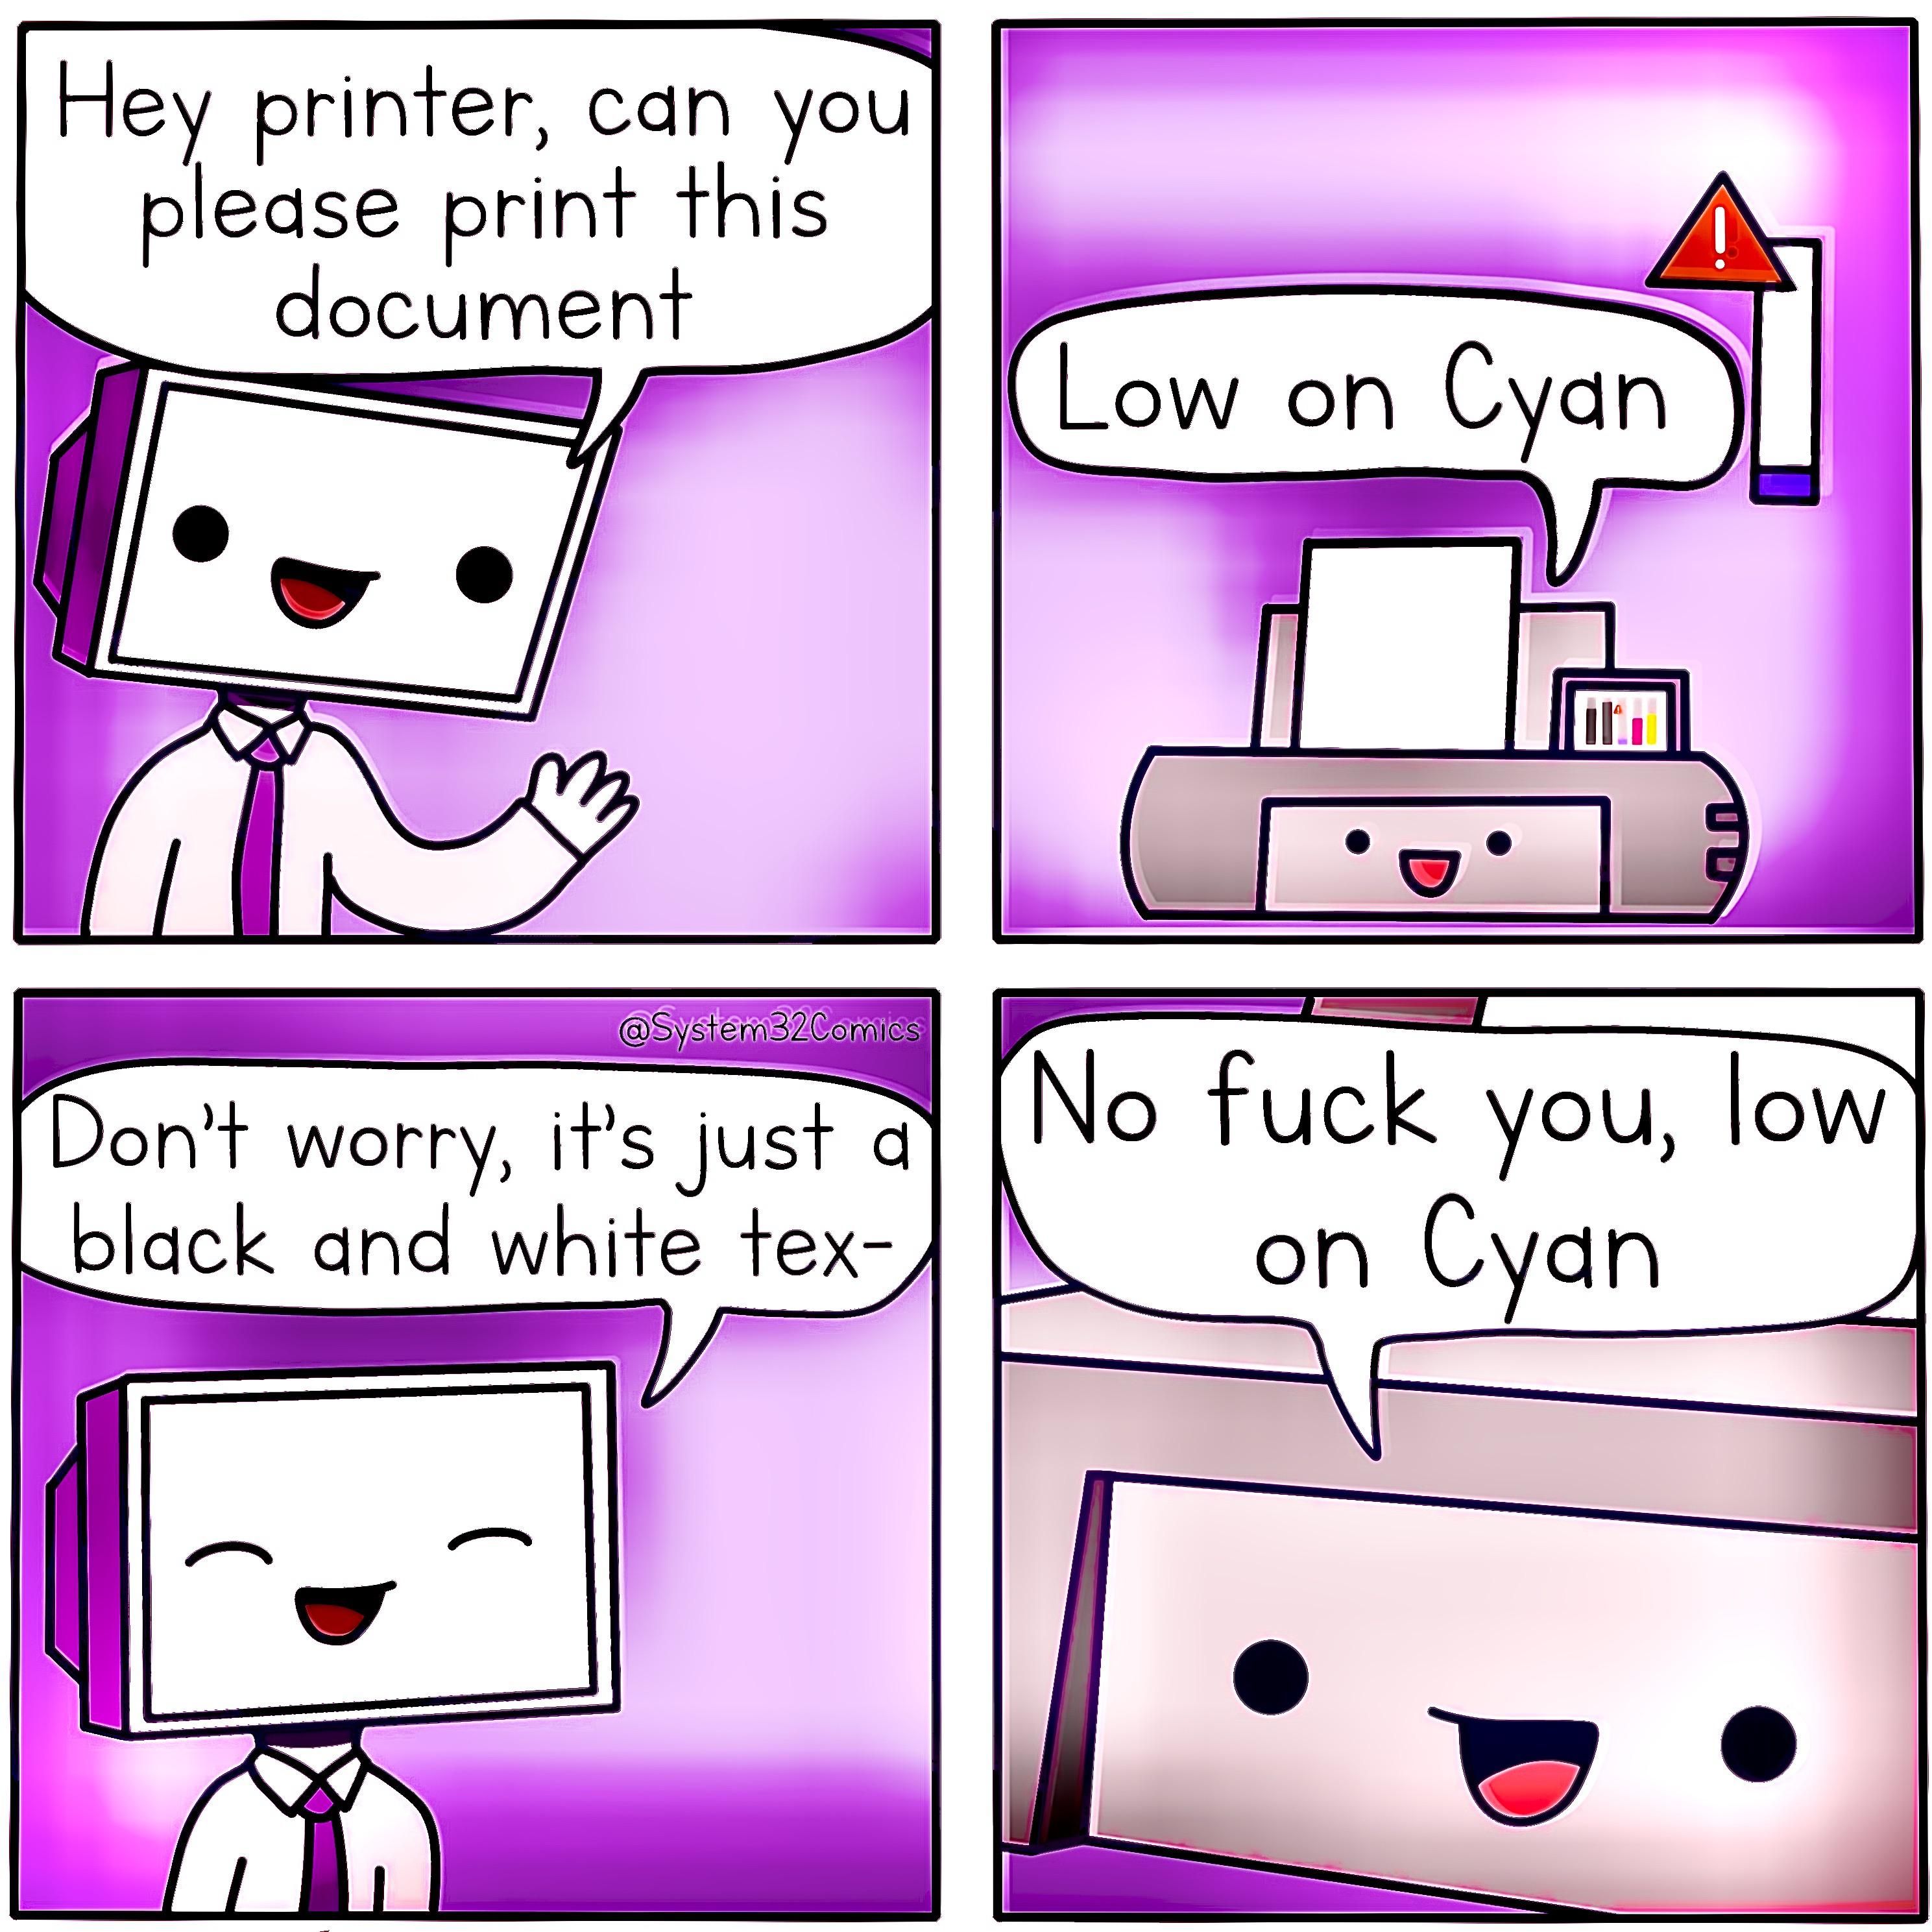 Printers huh?